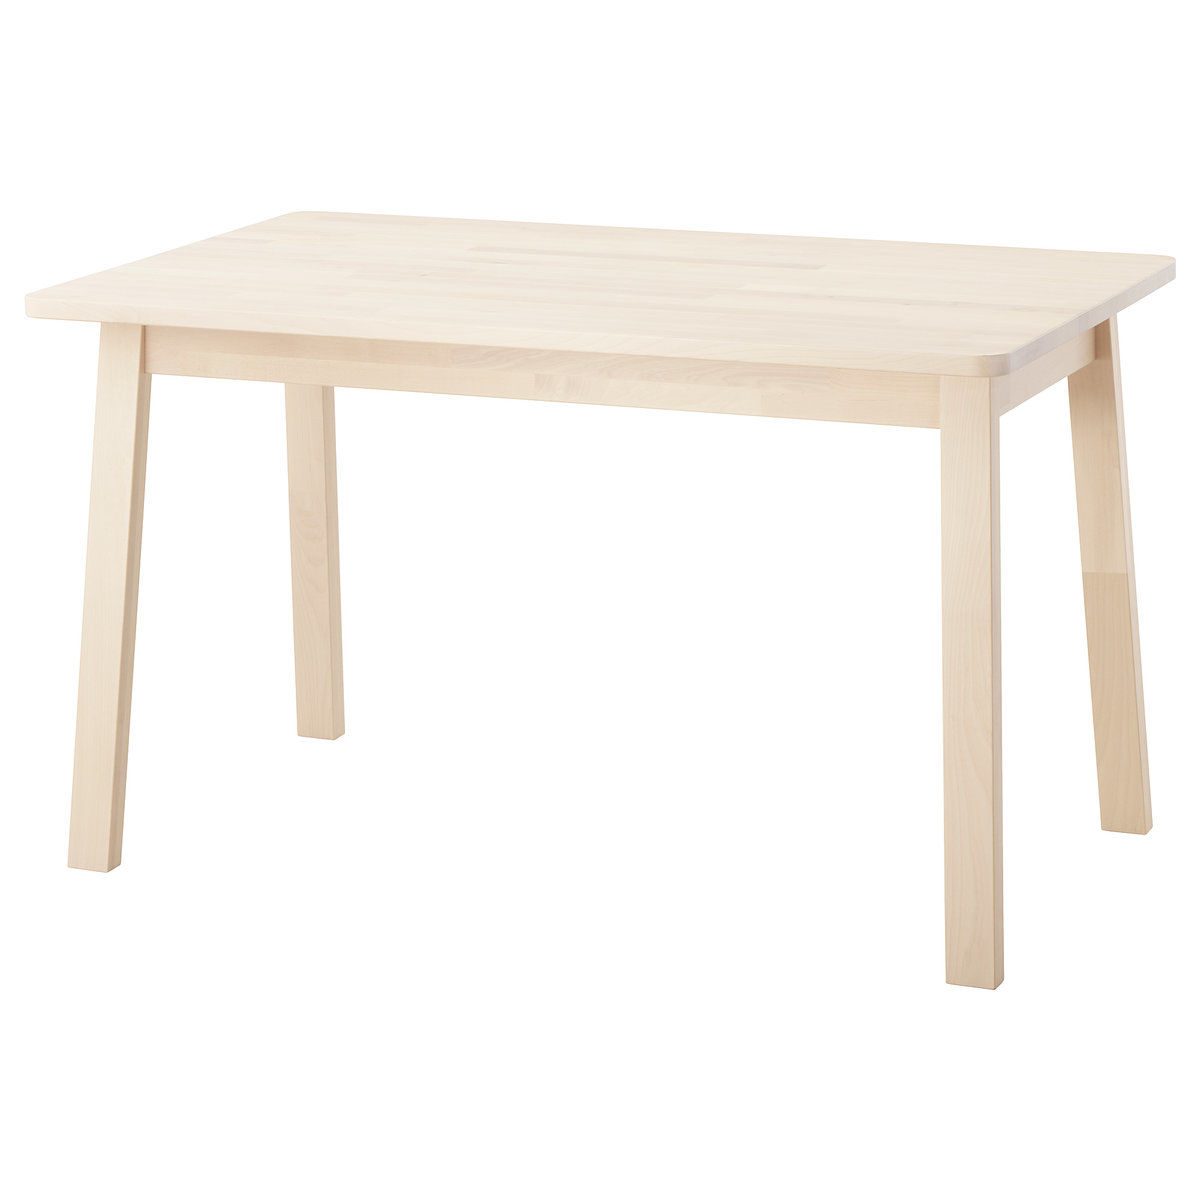 IKEA NORRÅKER table 125x74 cm birch